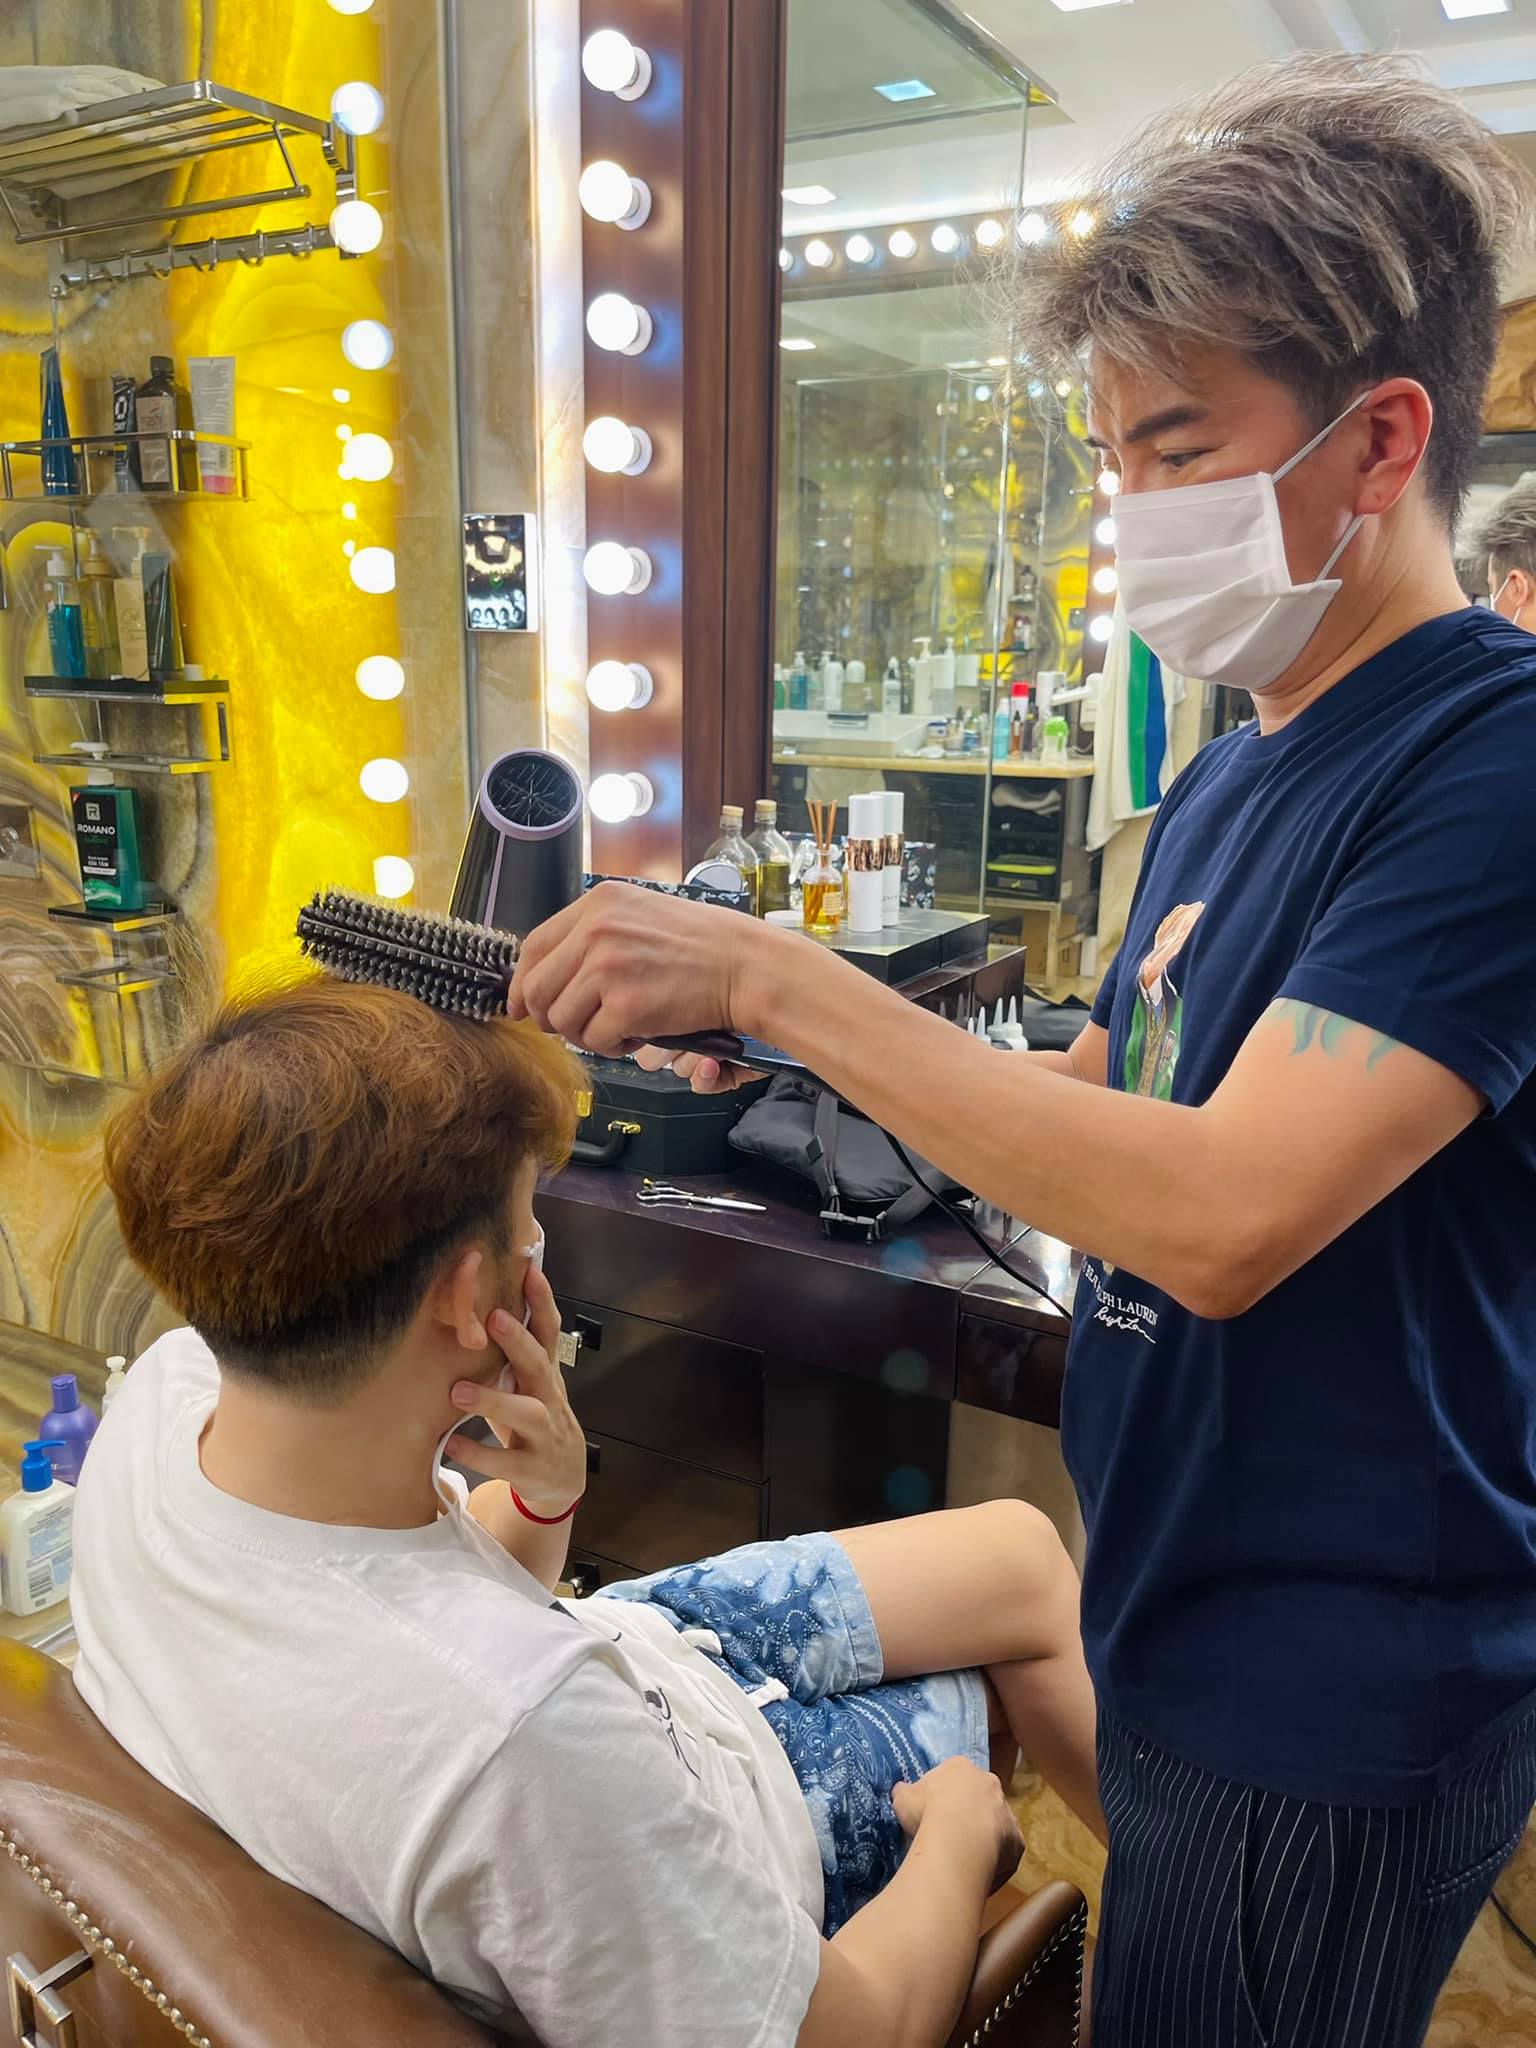 Vinh Barber sẽ mang đến cho bạn một phong cách tóc thật phong cách và độc đáo. Chúng tôi cam kết tạo ra những kiểu tóc đầu tiên tại Việt Nam thông qua các sản phẩm và dịch vụ được thiết kế riêng cho nam giới. Hãy đến với Vinh Barber để trải nghiệm dịch vụ chăm sóc tóc đẳng cấp.